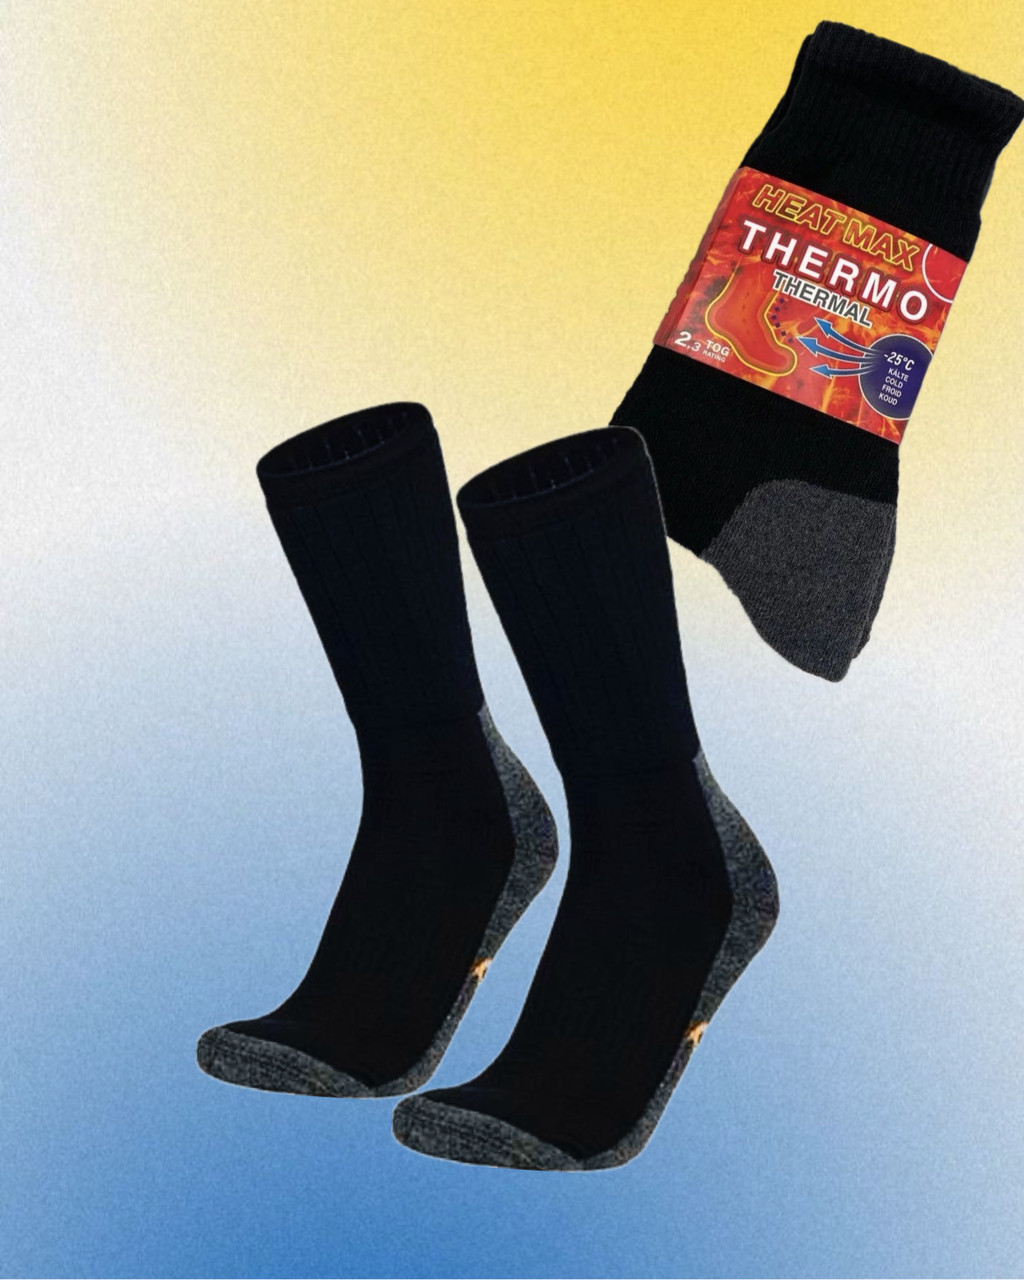 Чоловічі термошкарпетки утеплені шкарпетки Termo до -20 °C/ Міцні Термошкарпетки чорні розмір 39-45